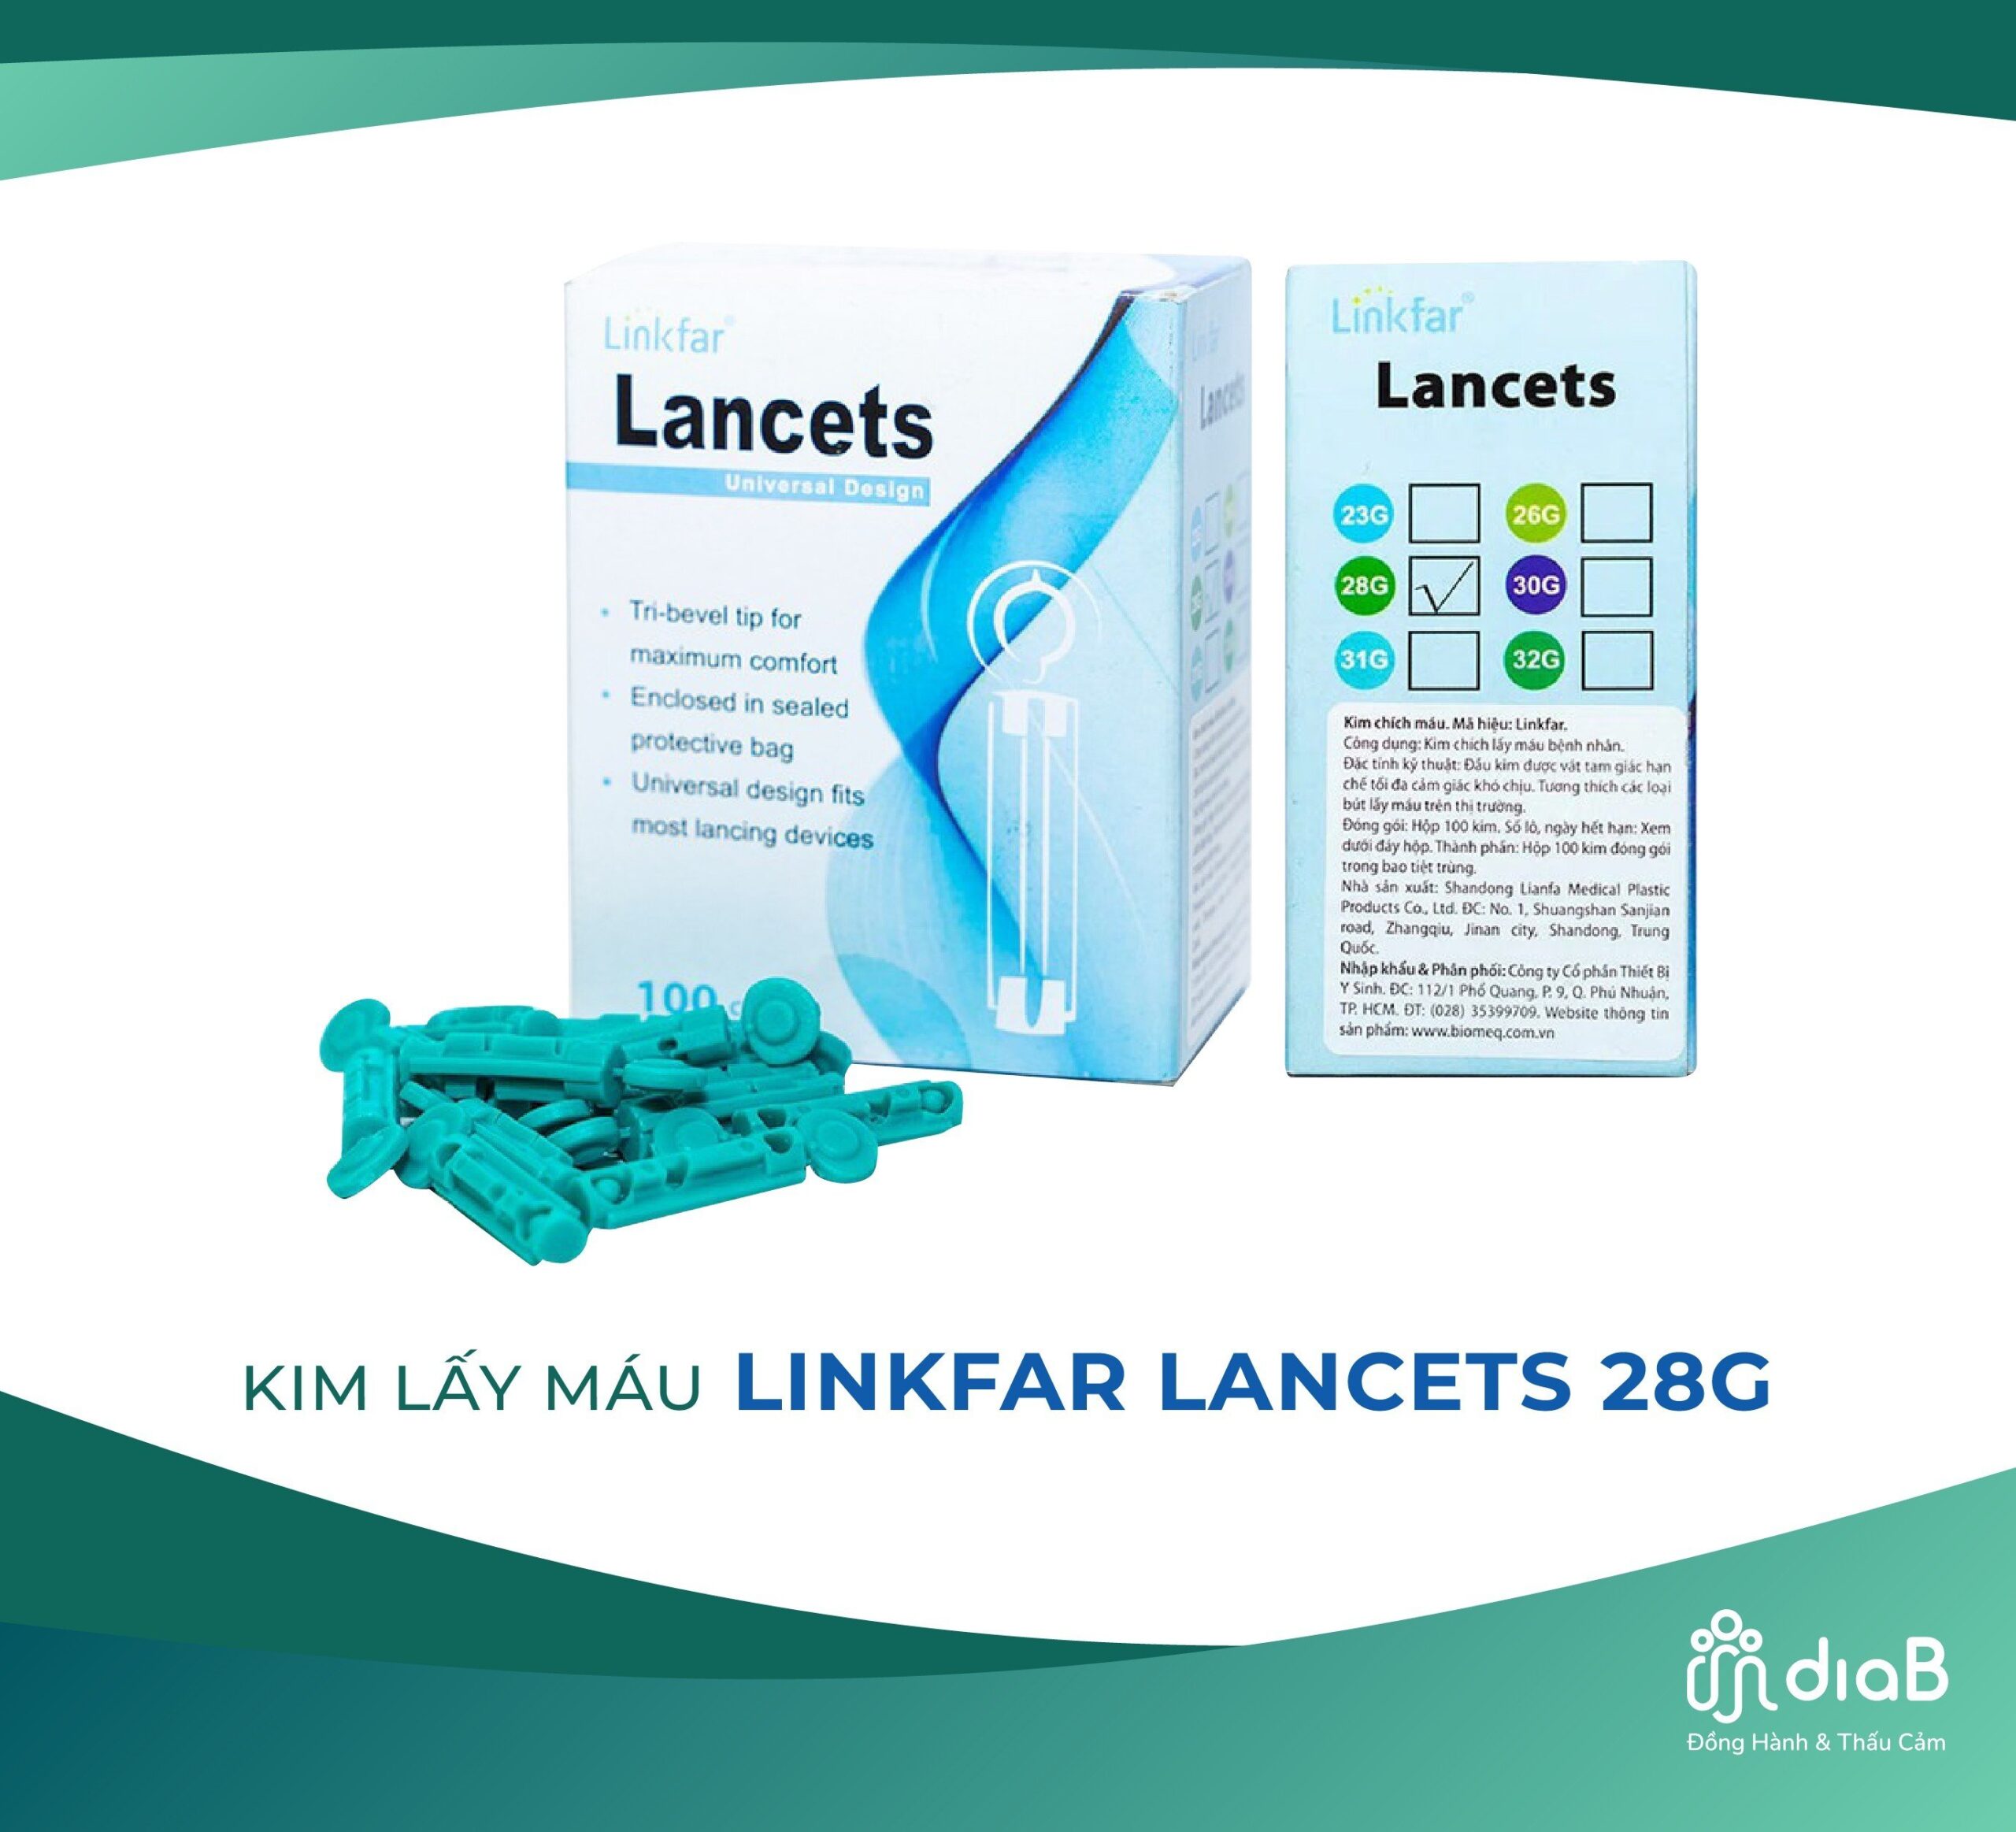 Kim lấy máu Linkfar Lancets 28g (100 Cái)